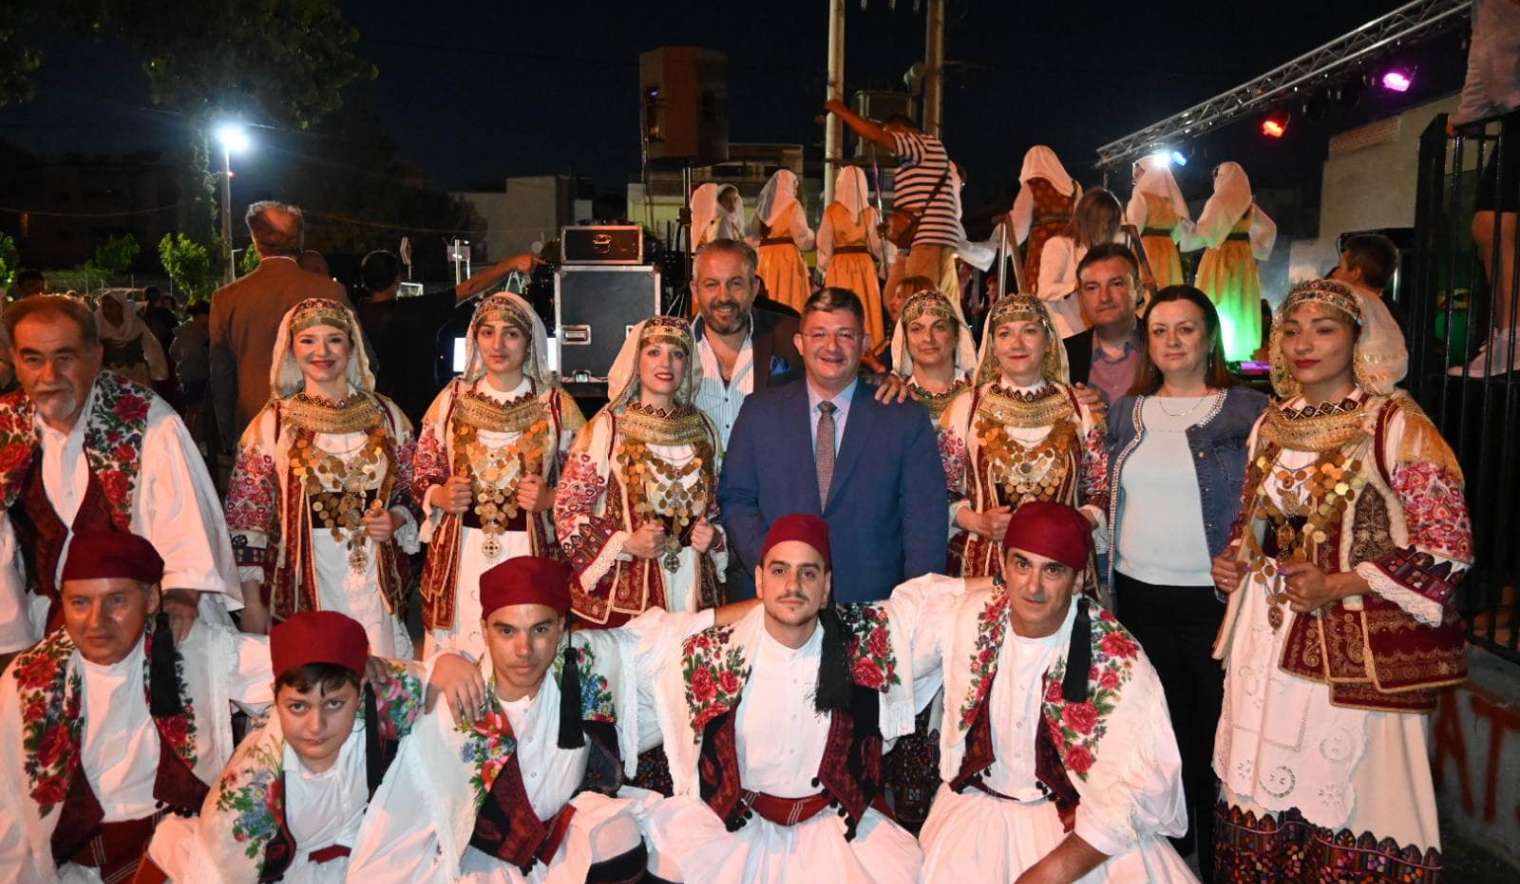 Με ιδιαίτερη επιτυχία ολοκληρώθηκαν οι πολιτιστικές εκδηλώσεις που διοργάνωσαν στον Κόκκινο Μύλο ο Δήμος Αχαρνών και η ΔΗΚΕΑ